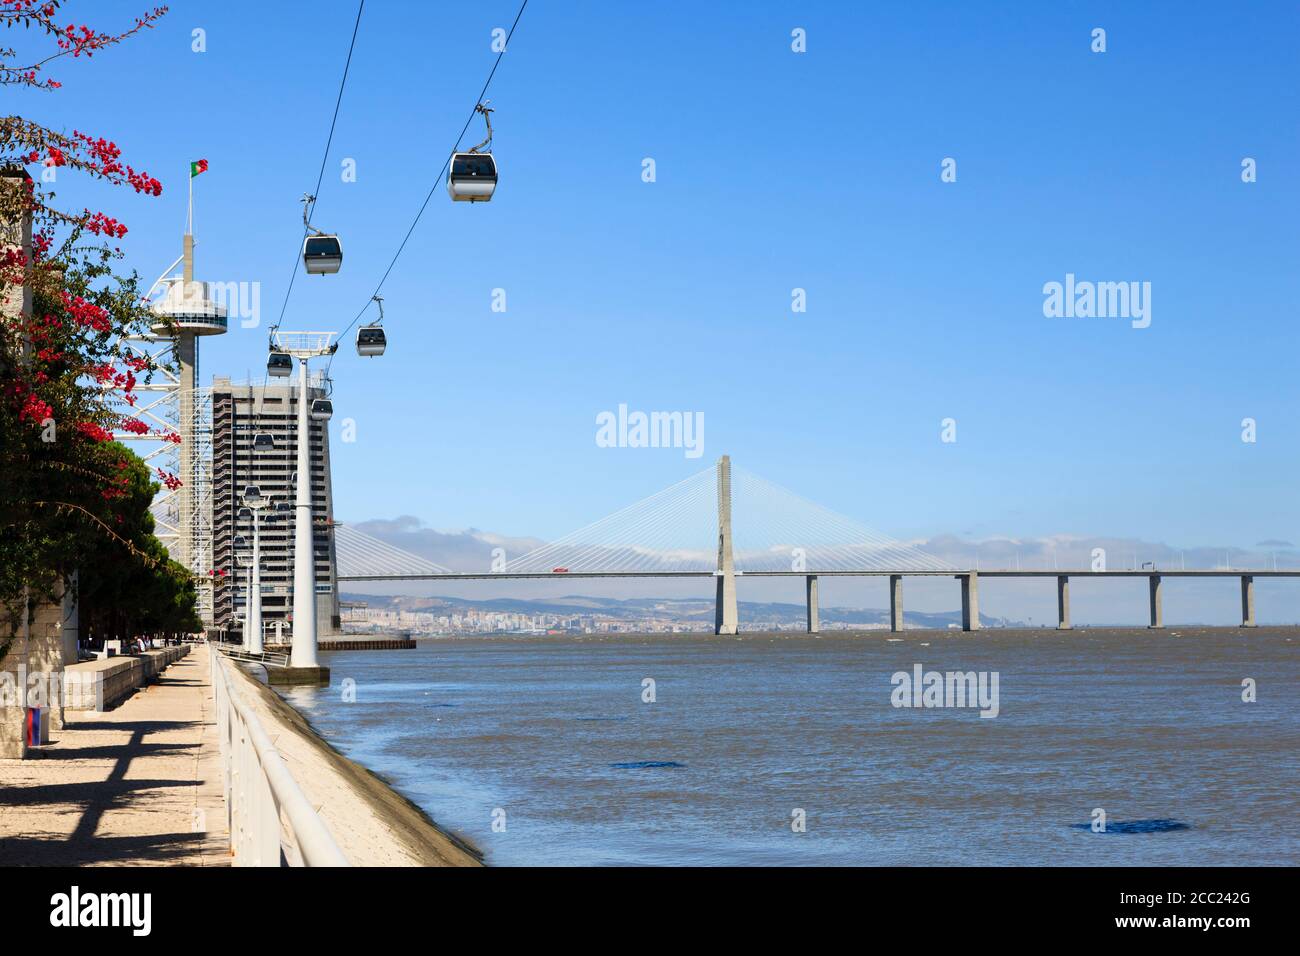 Europe, Portugal, Lisbonne, Parque das Nacoes, vue sur le pont Vasco da Gama et la tour Vasco da Gama avec téléphérique au-dessus du Tage Banque D'Images